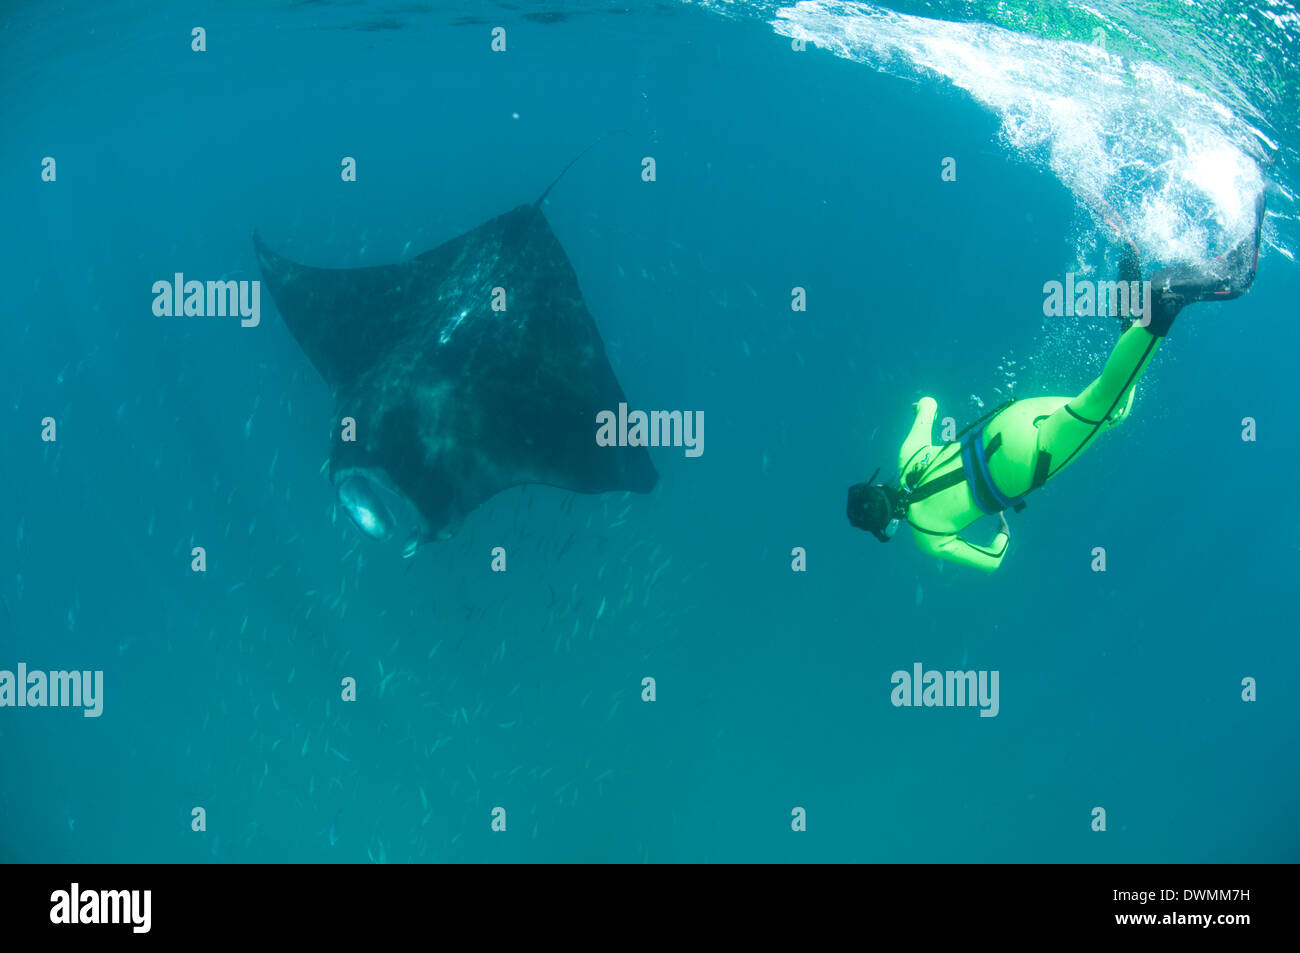 Scientist buceo libre para fotografiar un manta ray (Manta birostris), Yum Balam Área Marina Protegida, Quintana Roo, México. Foto de stock